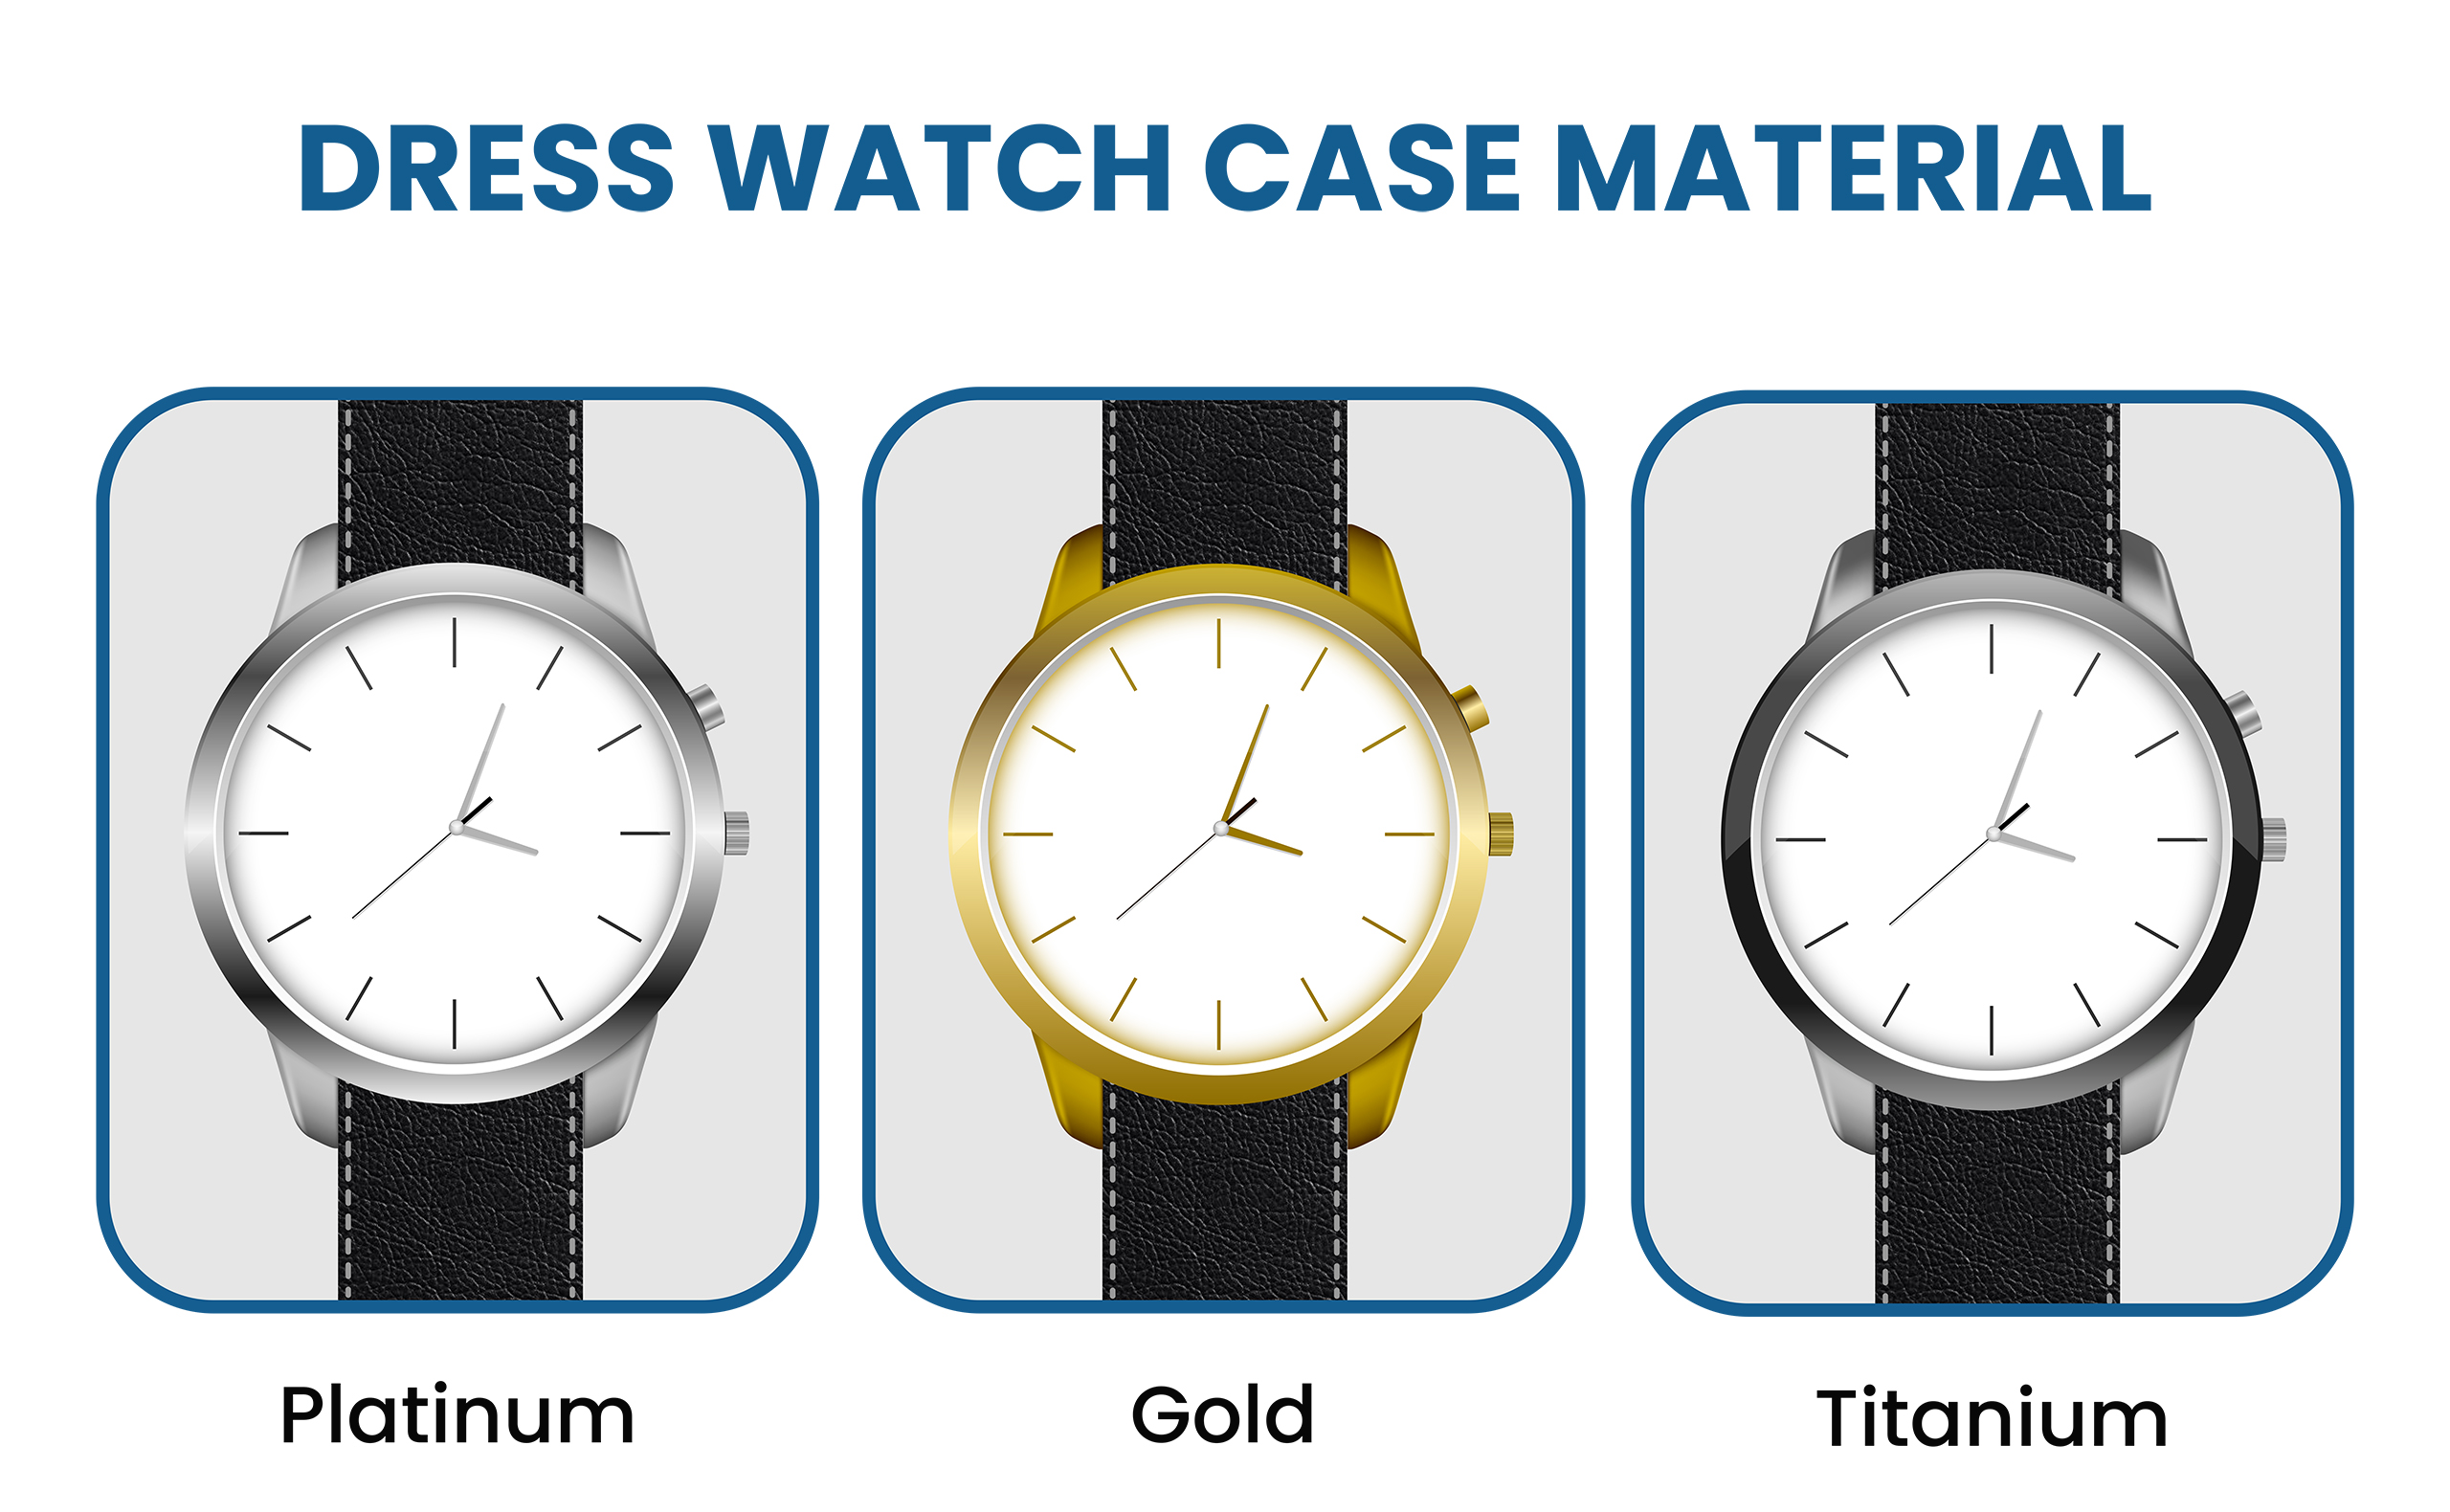 dress watch case material: platinum vs. gold vs. titanium